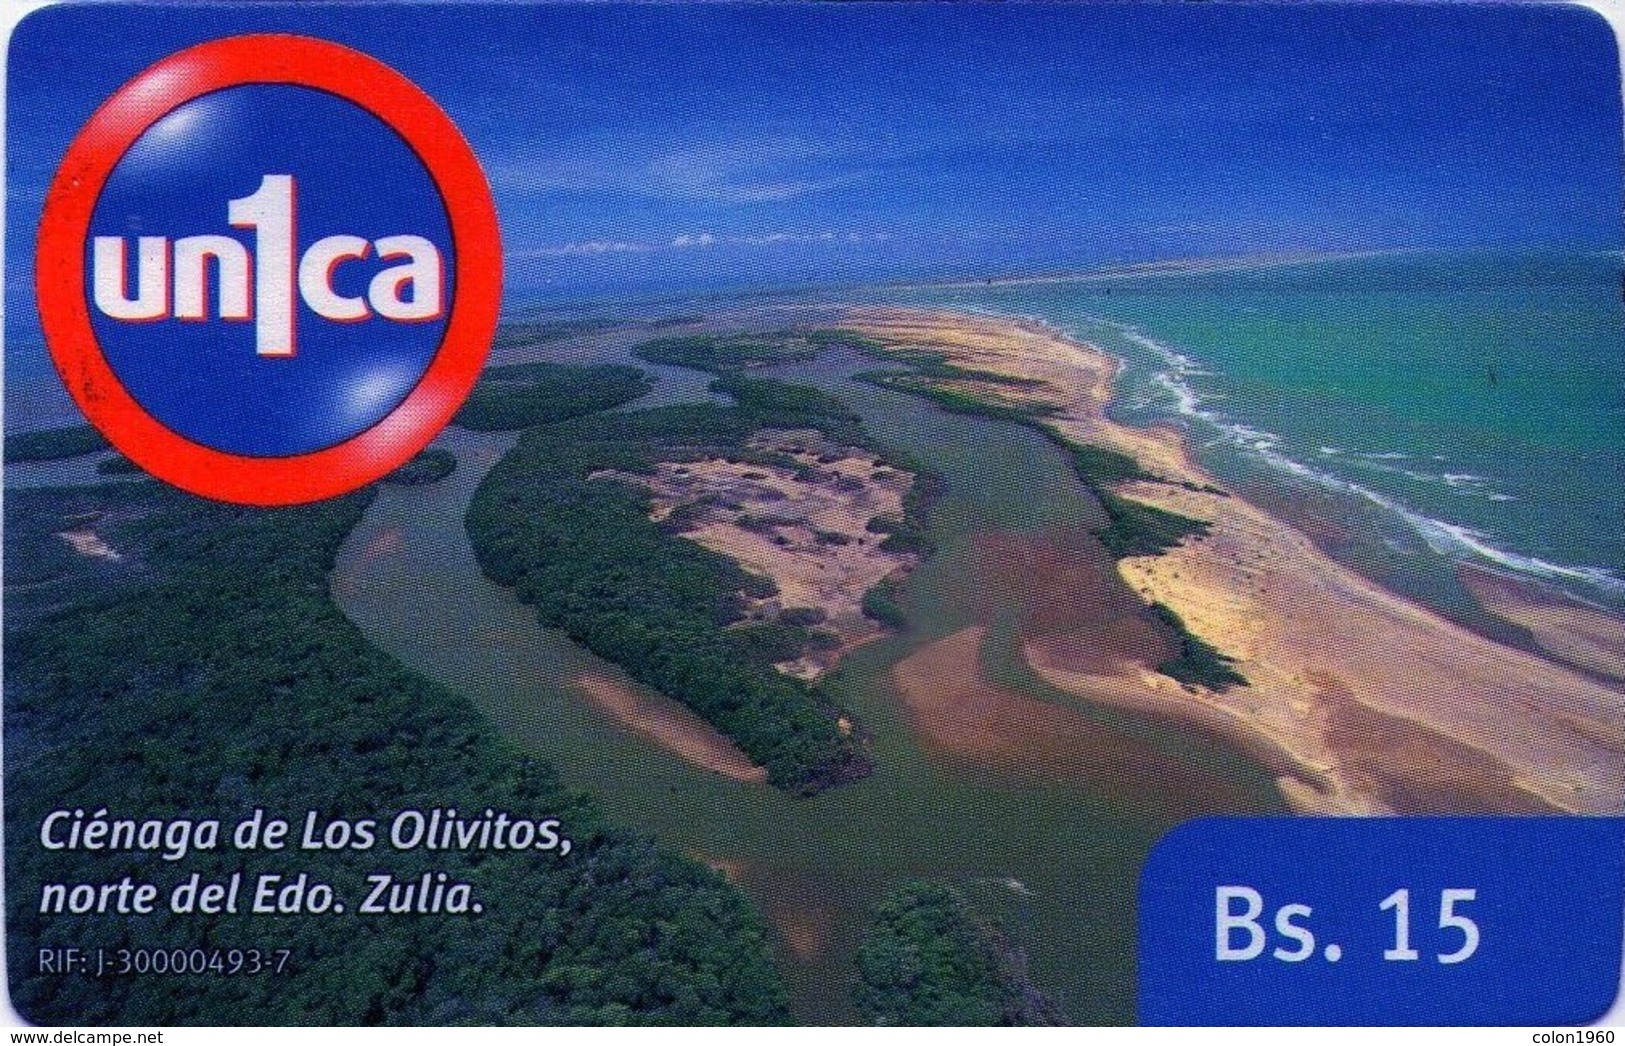 VENEZUELA, GSM-RECARGA. Ciénaga De Los Olivitos, Norte Del Edo. Zulia. CI100202. VE-UNICA-C-100202. (288). - Venezuela